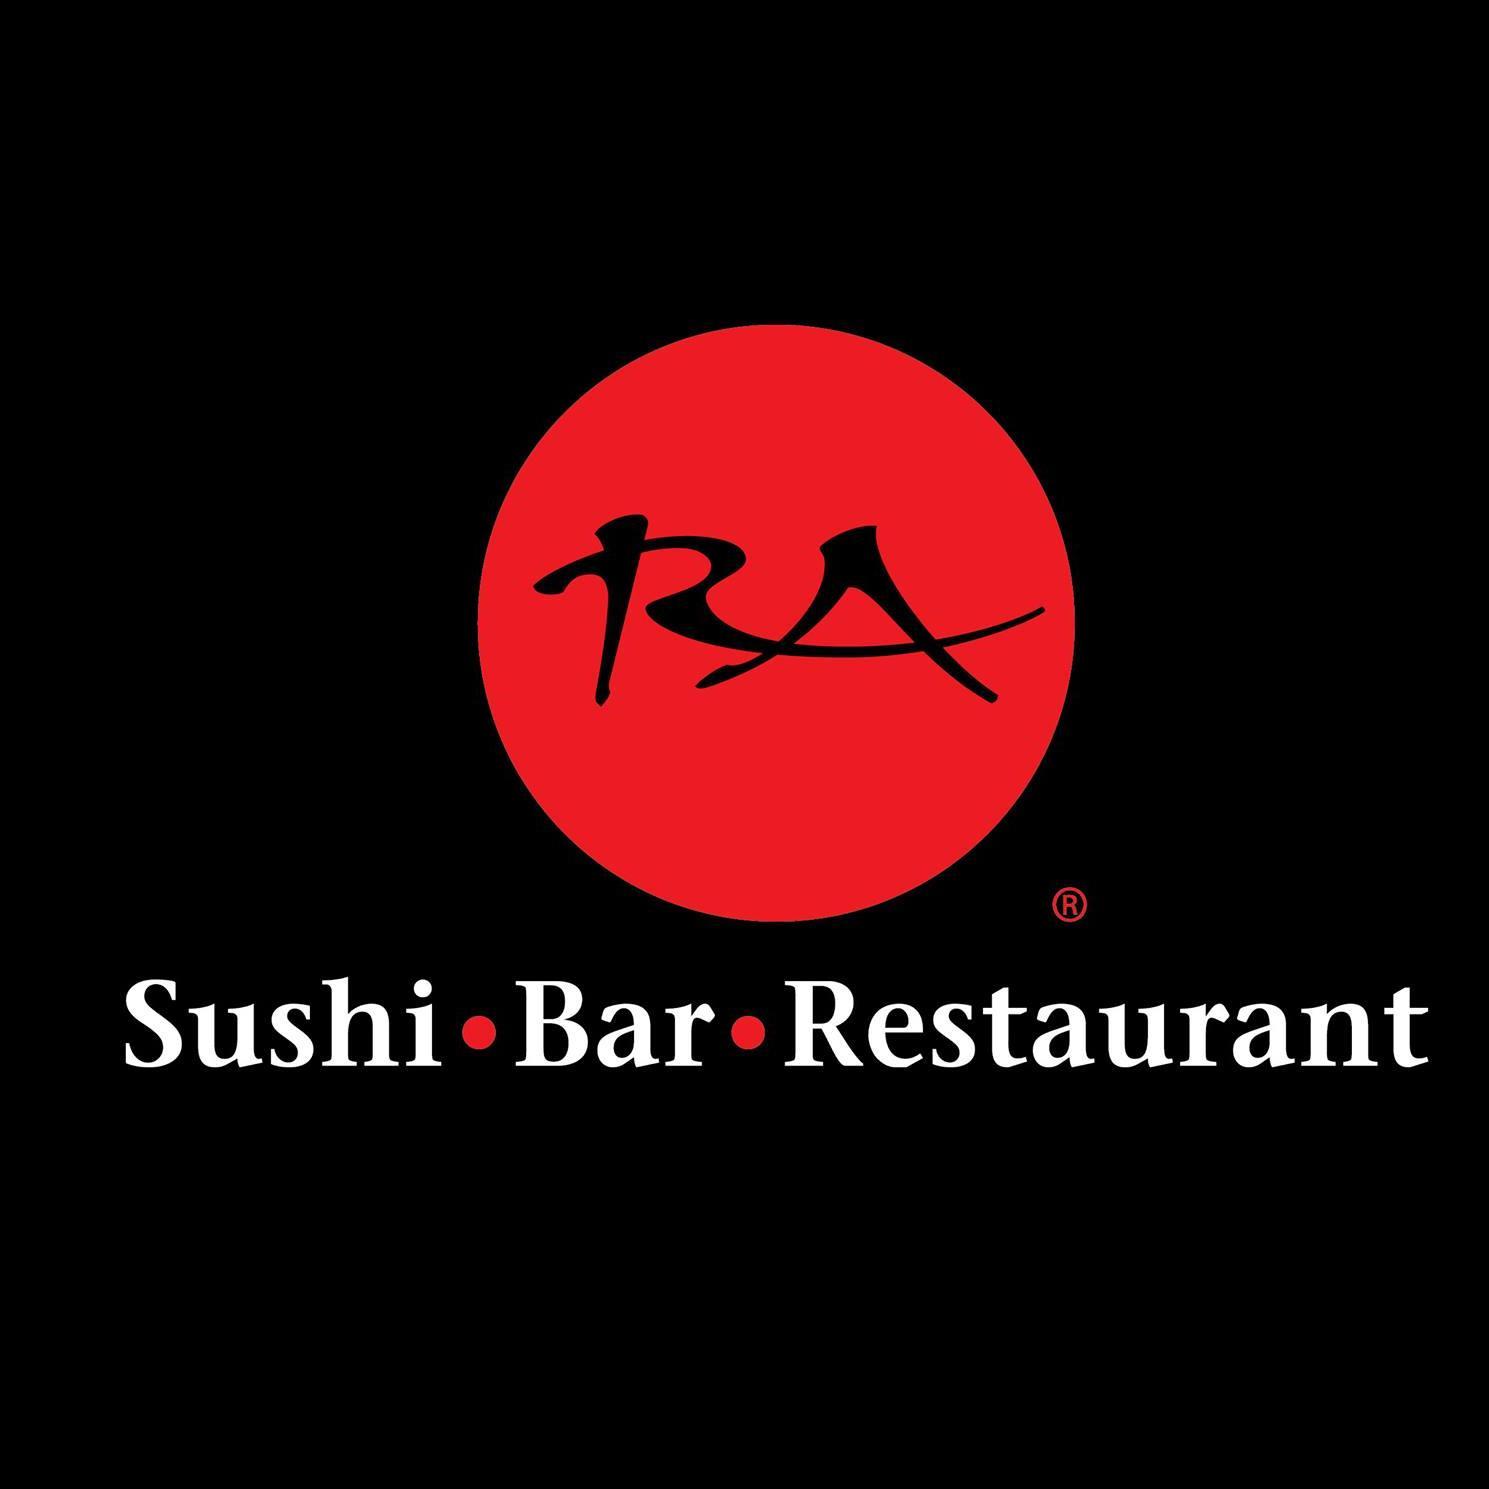 RA Sushi Bar